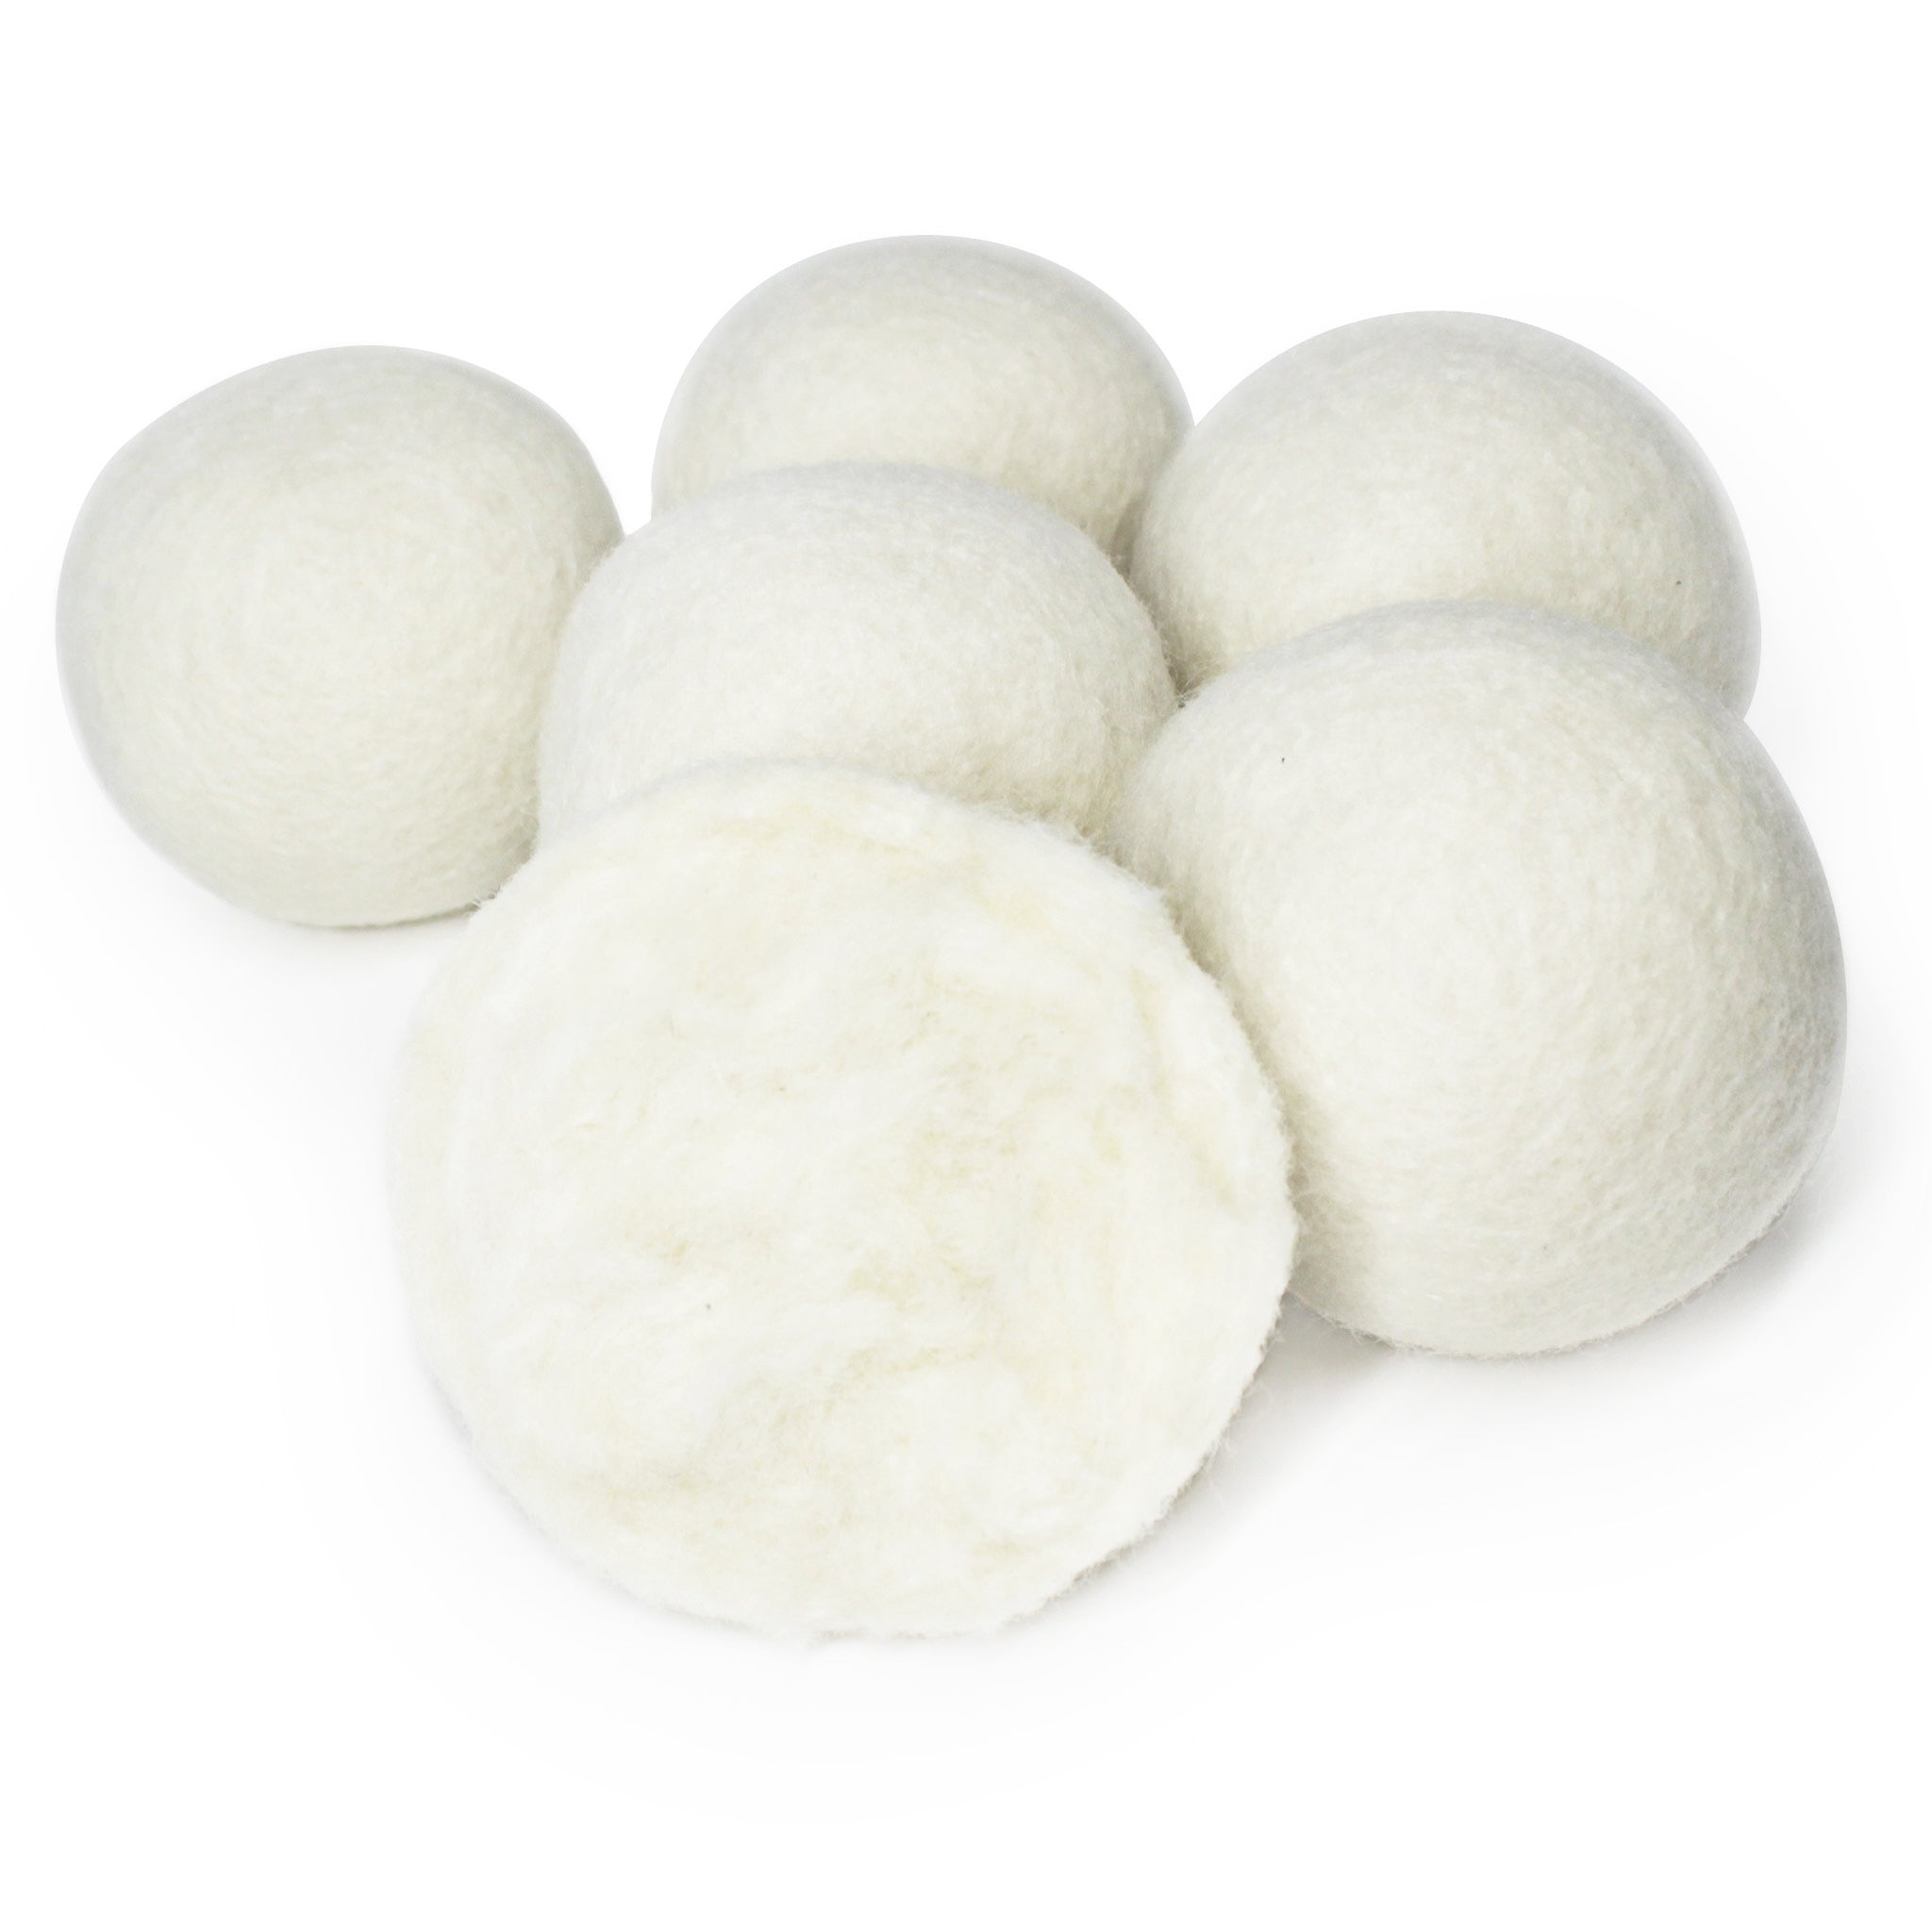 Heritage Park Wool Dryer Balls - 100% New Zealand Wool Handmade, Reusable Dryer